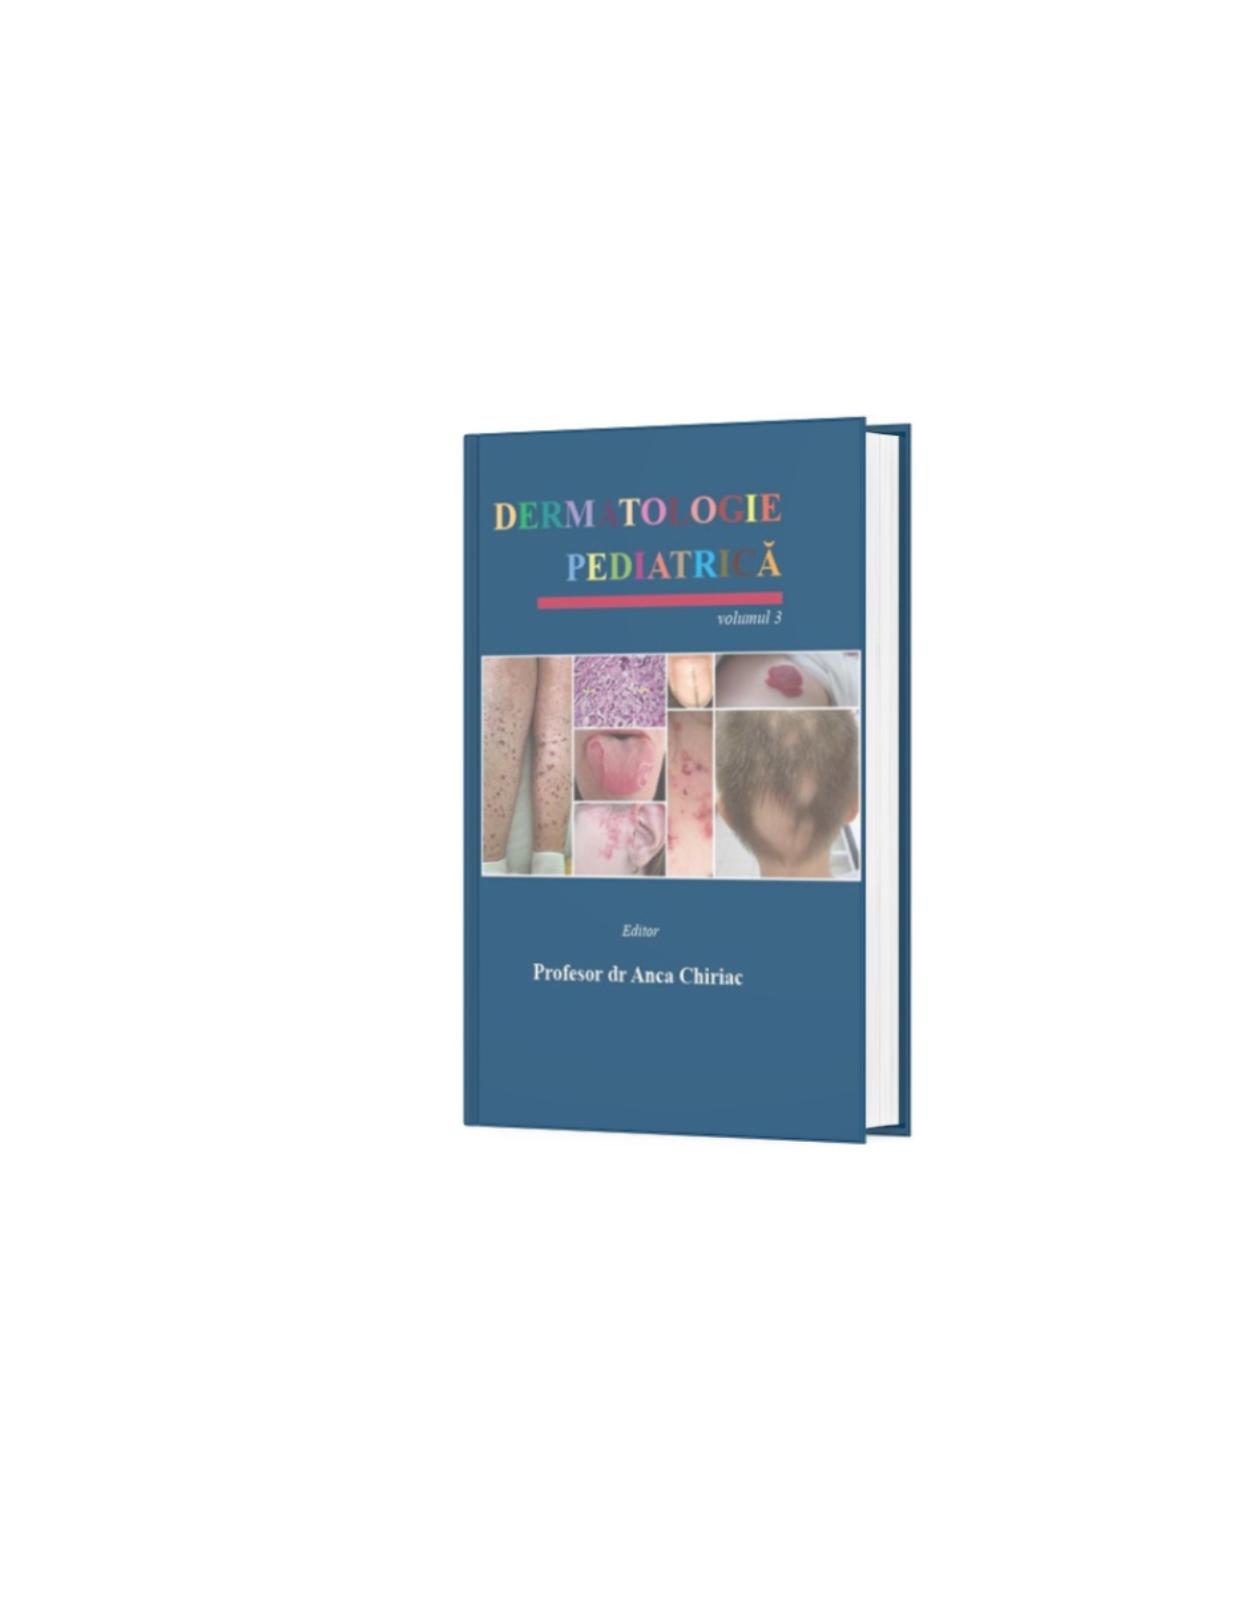 Dermatologie Pediatrica Vol.3